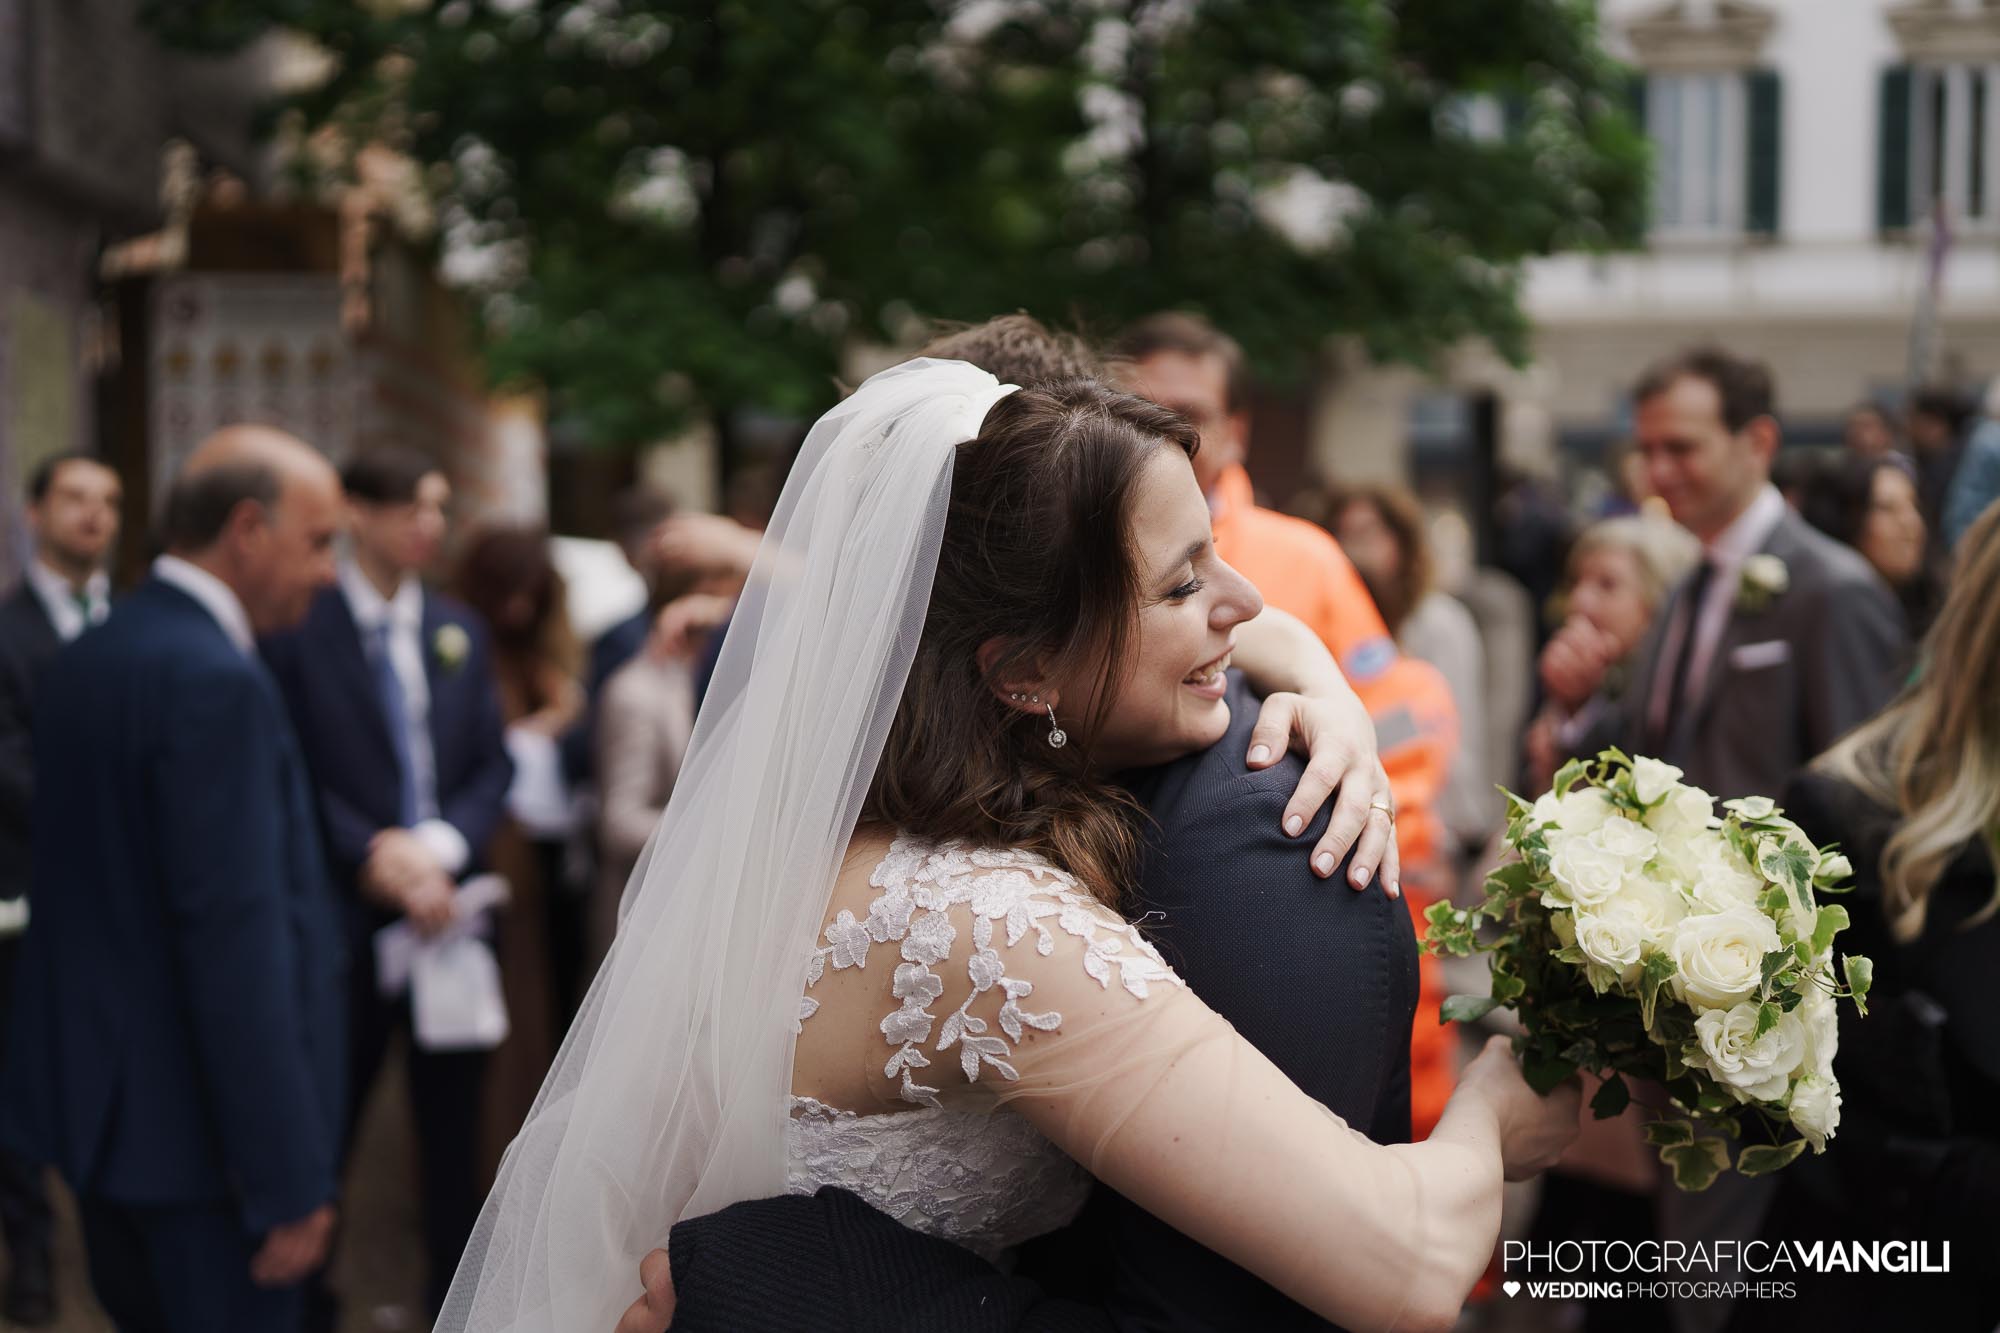 041 foto nozze wedding reportage sposi rito religioso uscita abbraccio saluto chiesa milano chiara oliviero